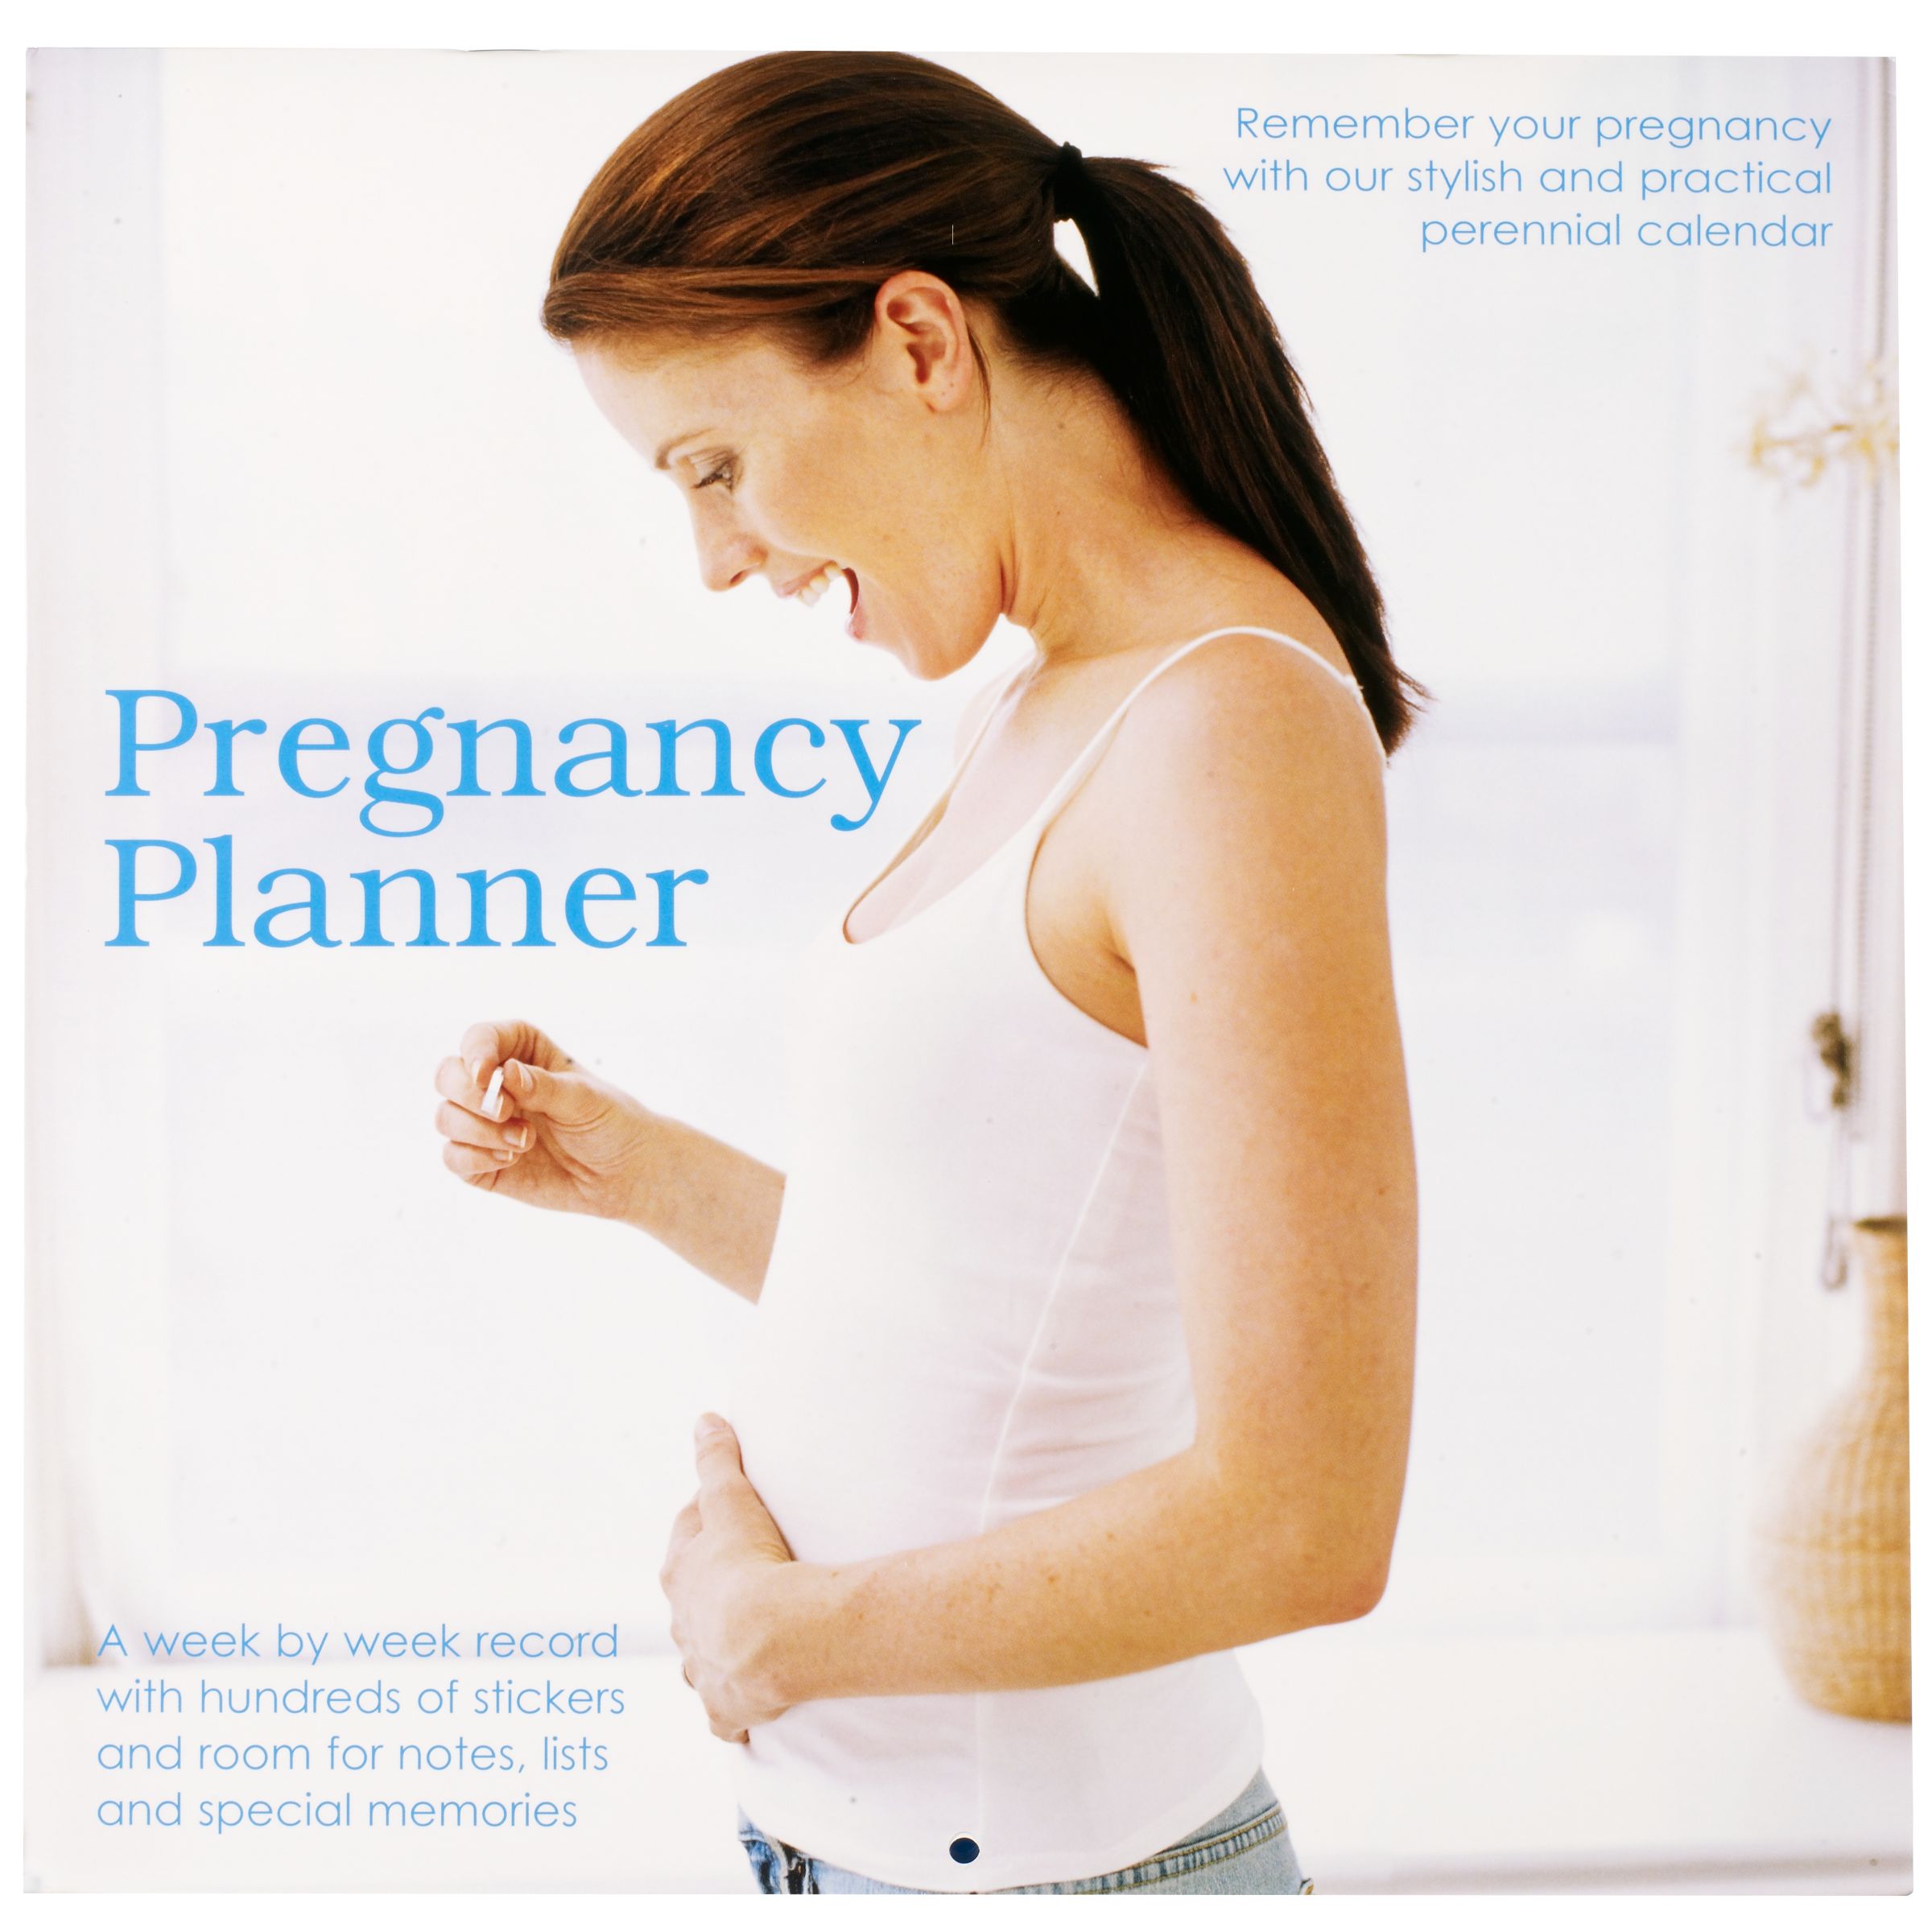 грудь и живот на раннем сроке беременности фото 106